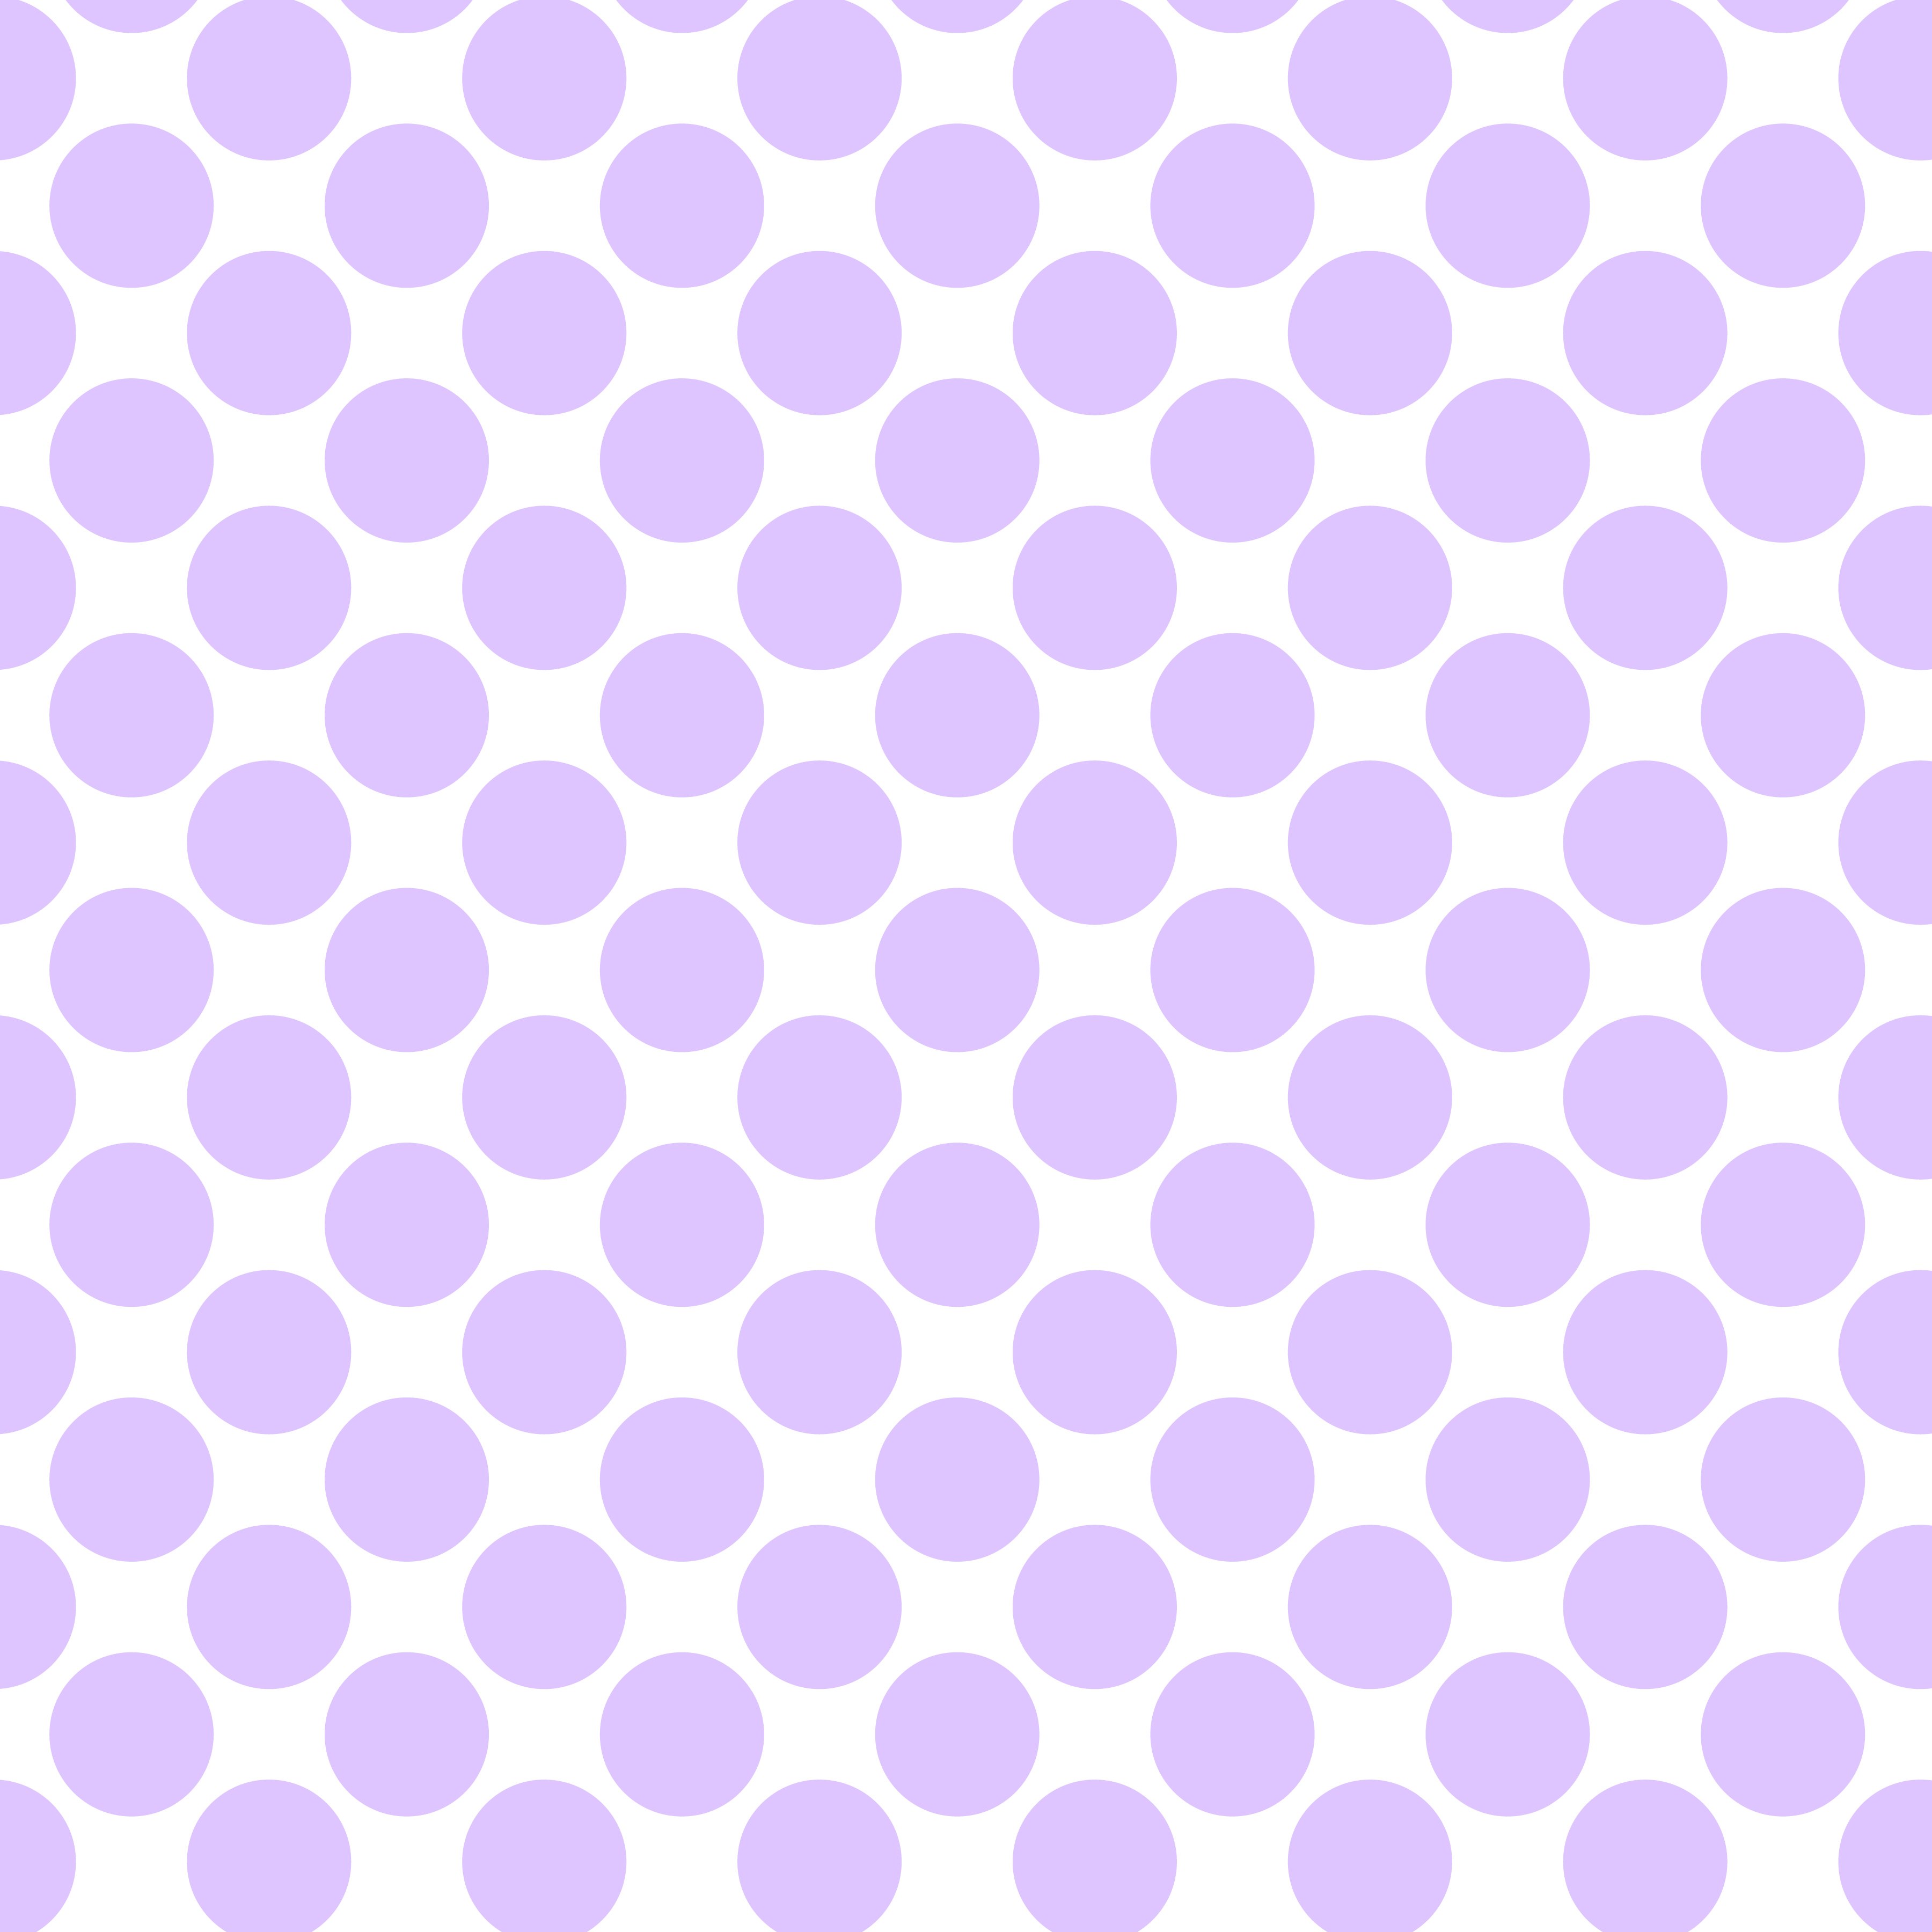 Polka Dot 1 cm Beyaz Periwinkle Puantiye Dekoratif Baskı Kumaş